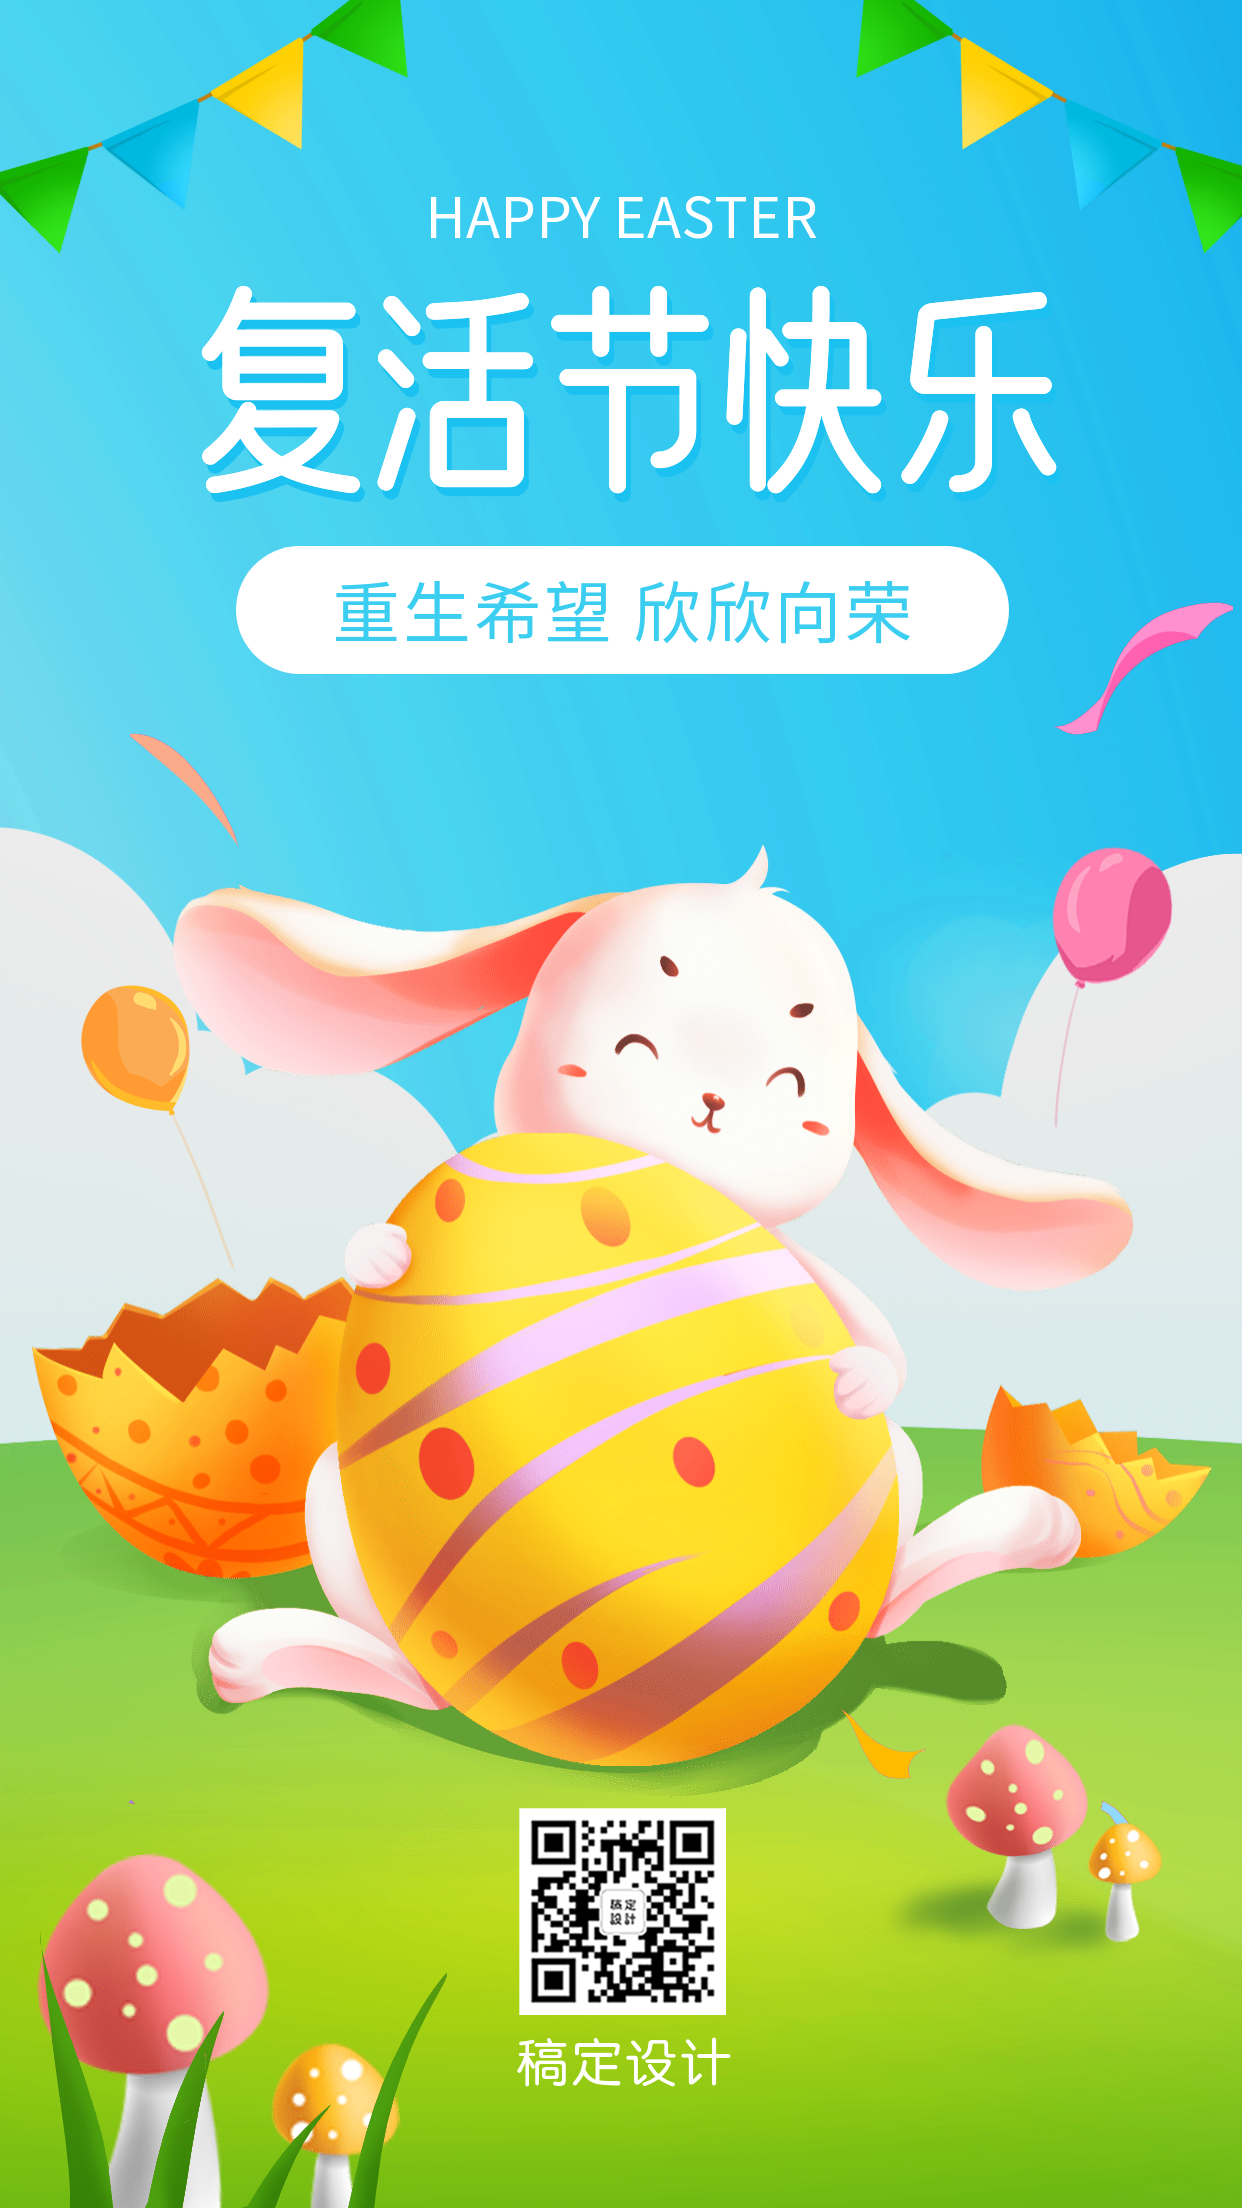 复活节彩蛋节日祝福手机海报预览效果